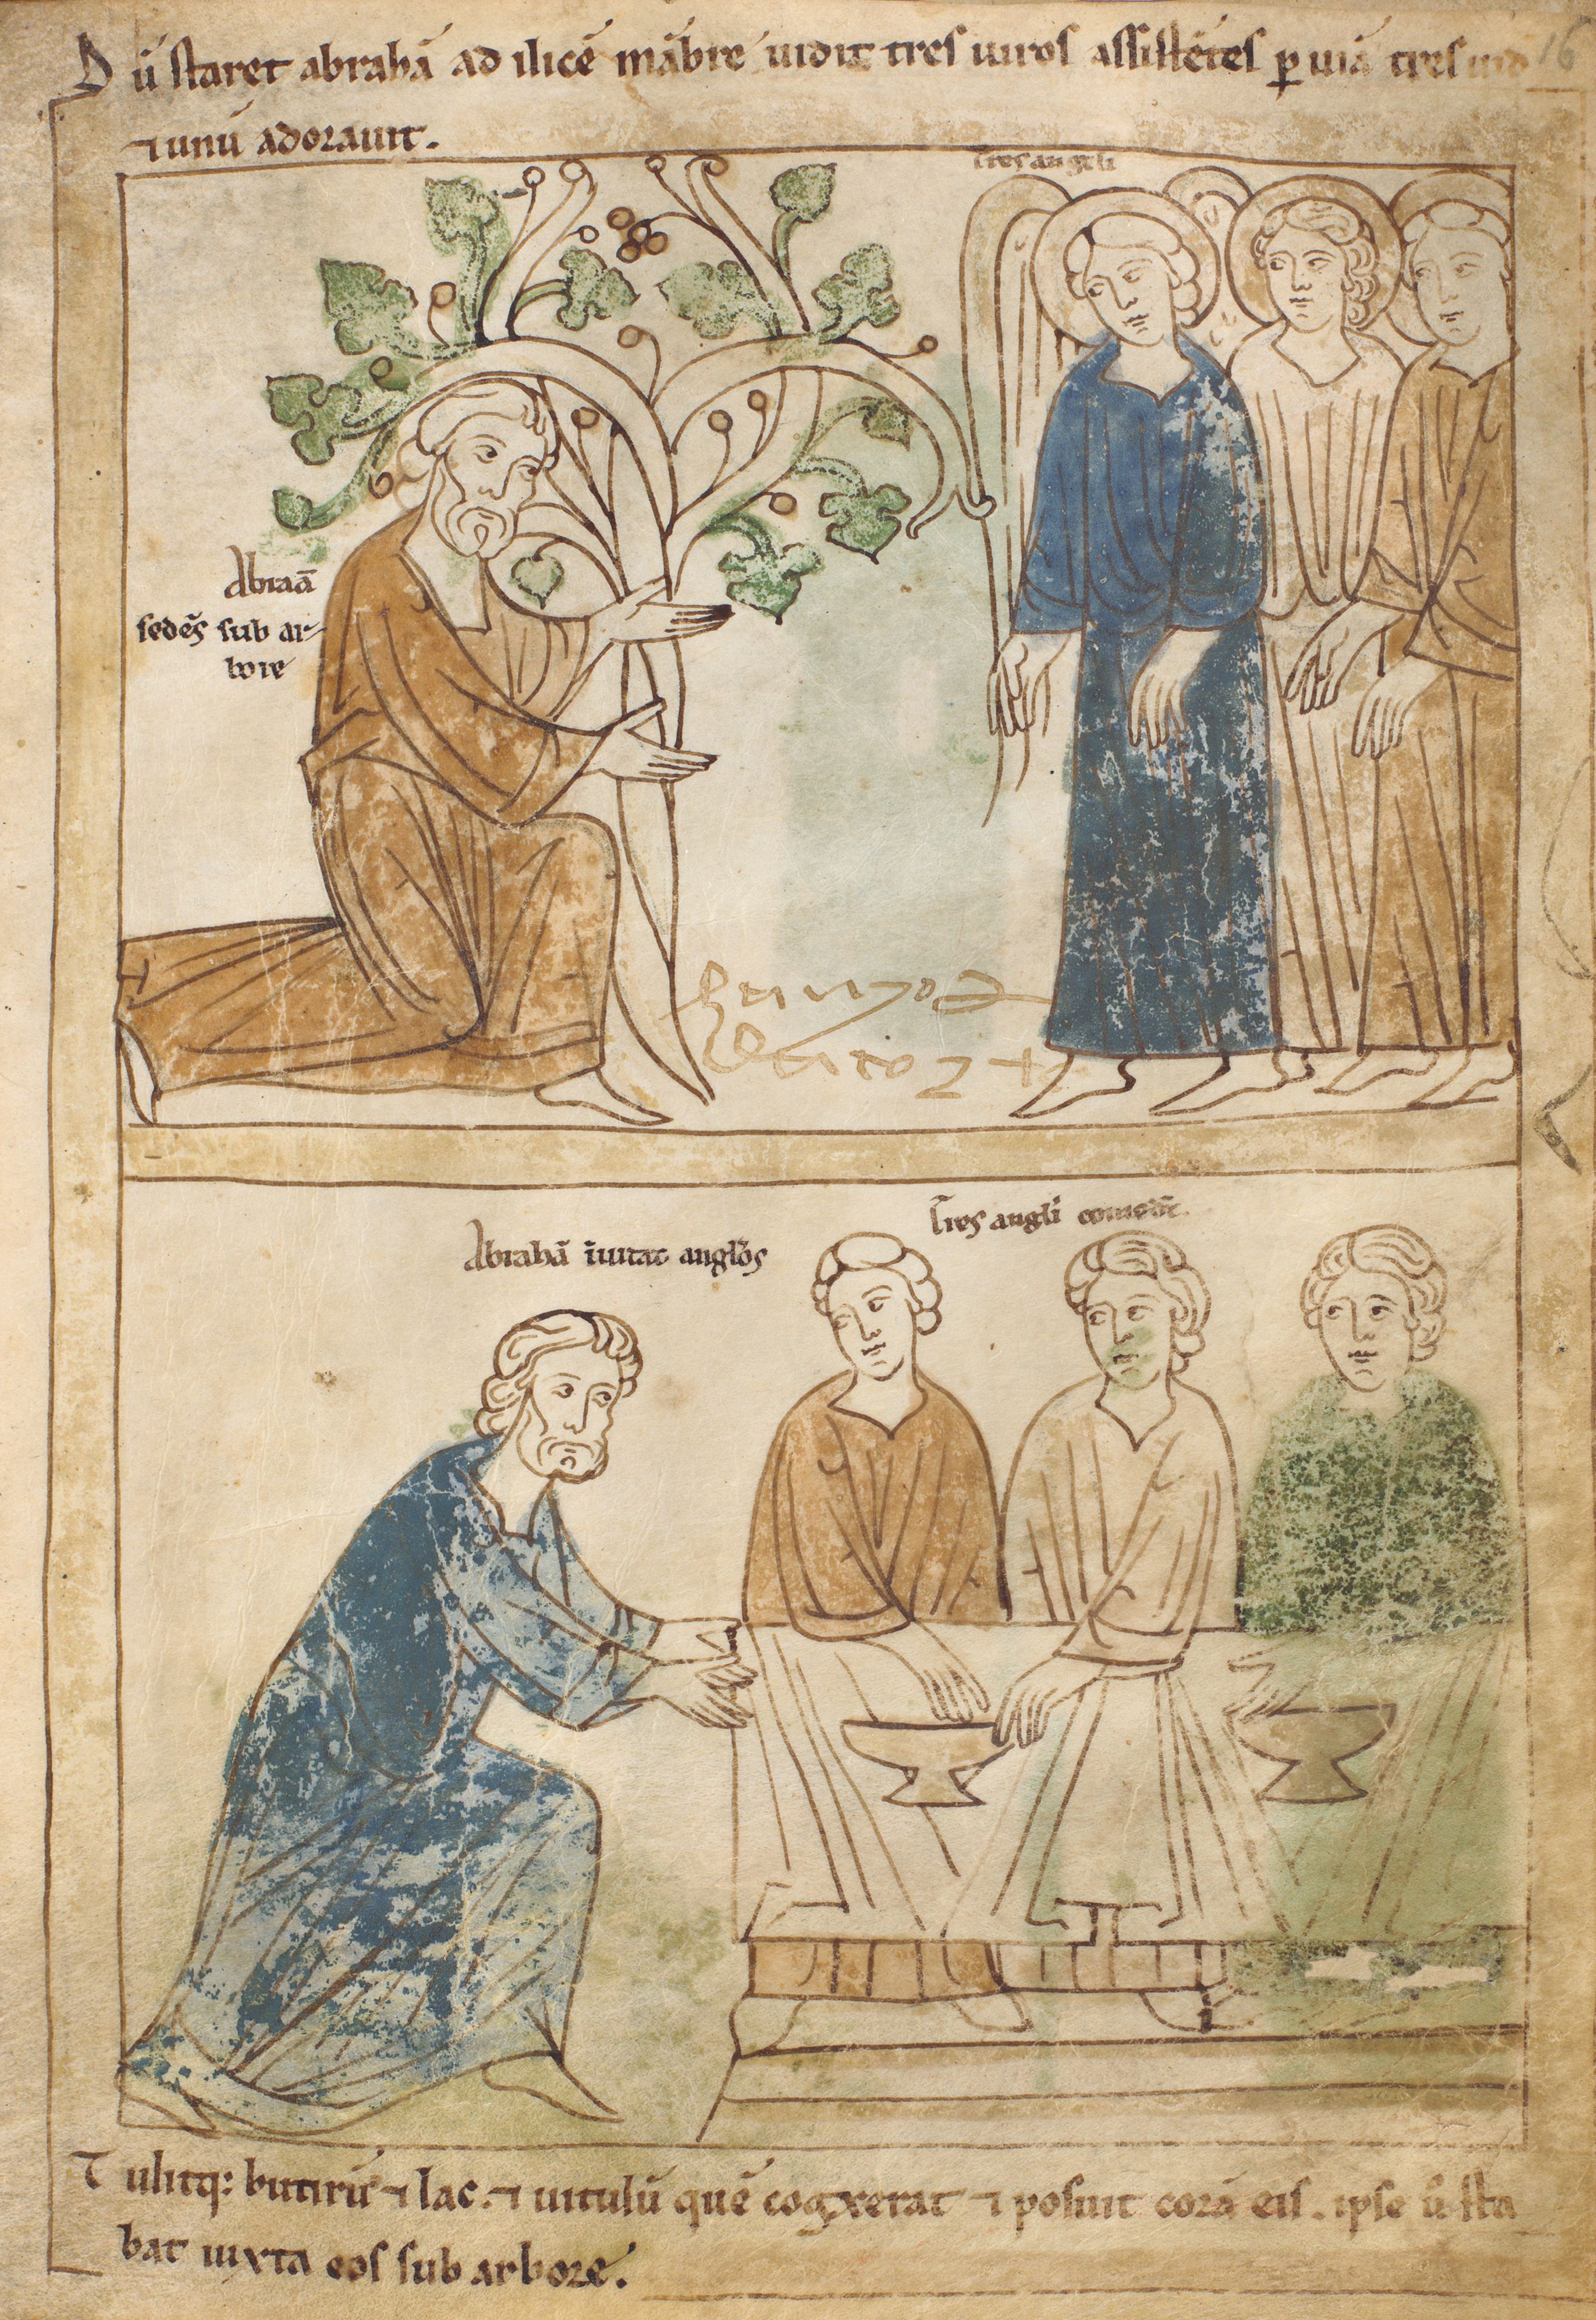 Seconde Bible de Pampelune, folio 16r – Apparition des trois hommes au Chêne de Mambré (Gn 18, 1-2). Abram invite les trois hommes à venir manger sous sa tente (Gn 18, 3-8).